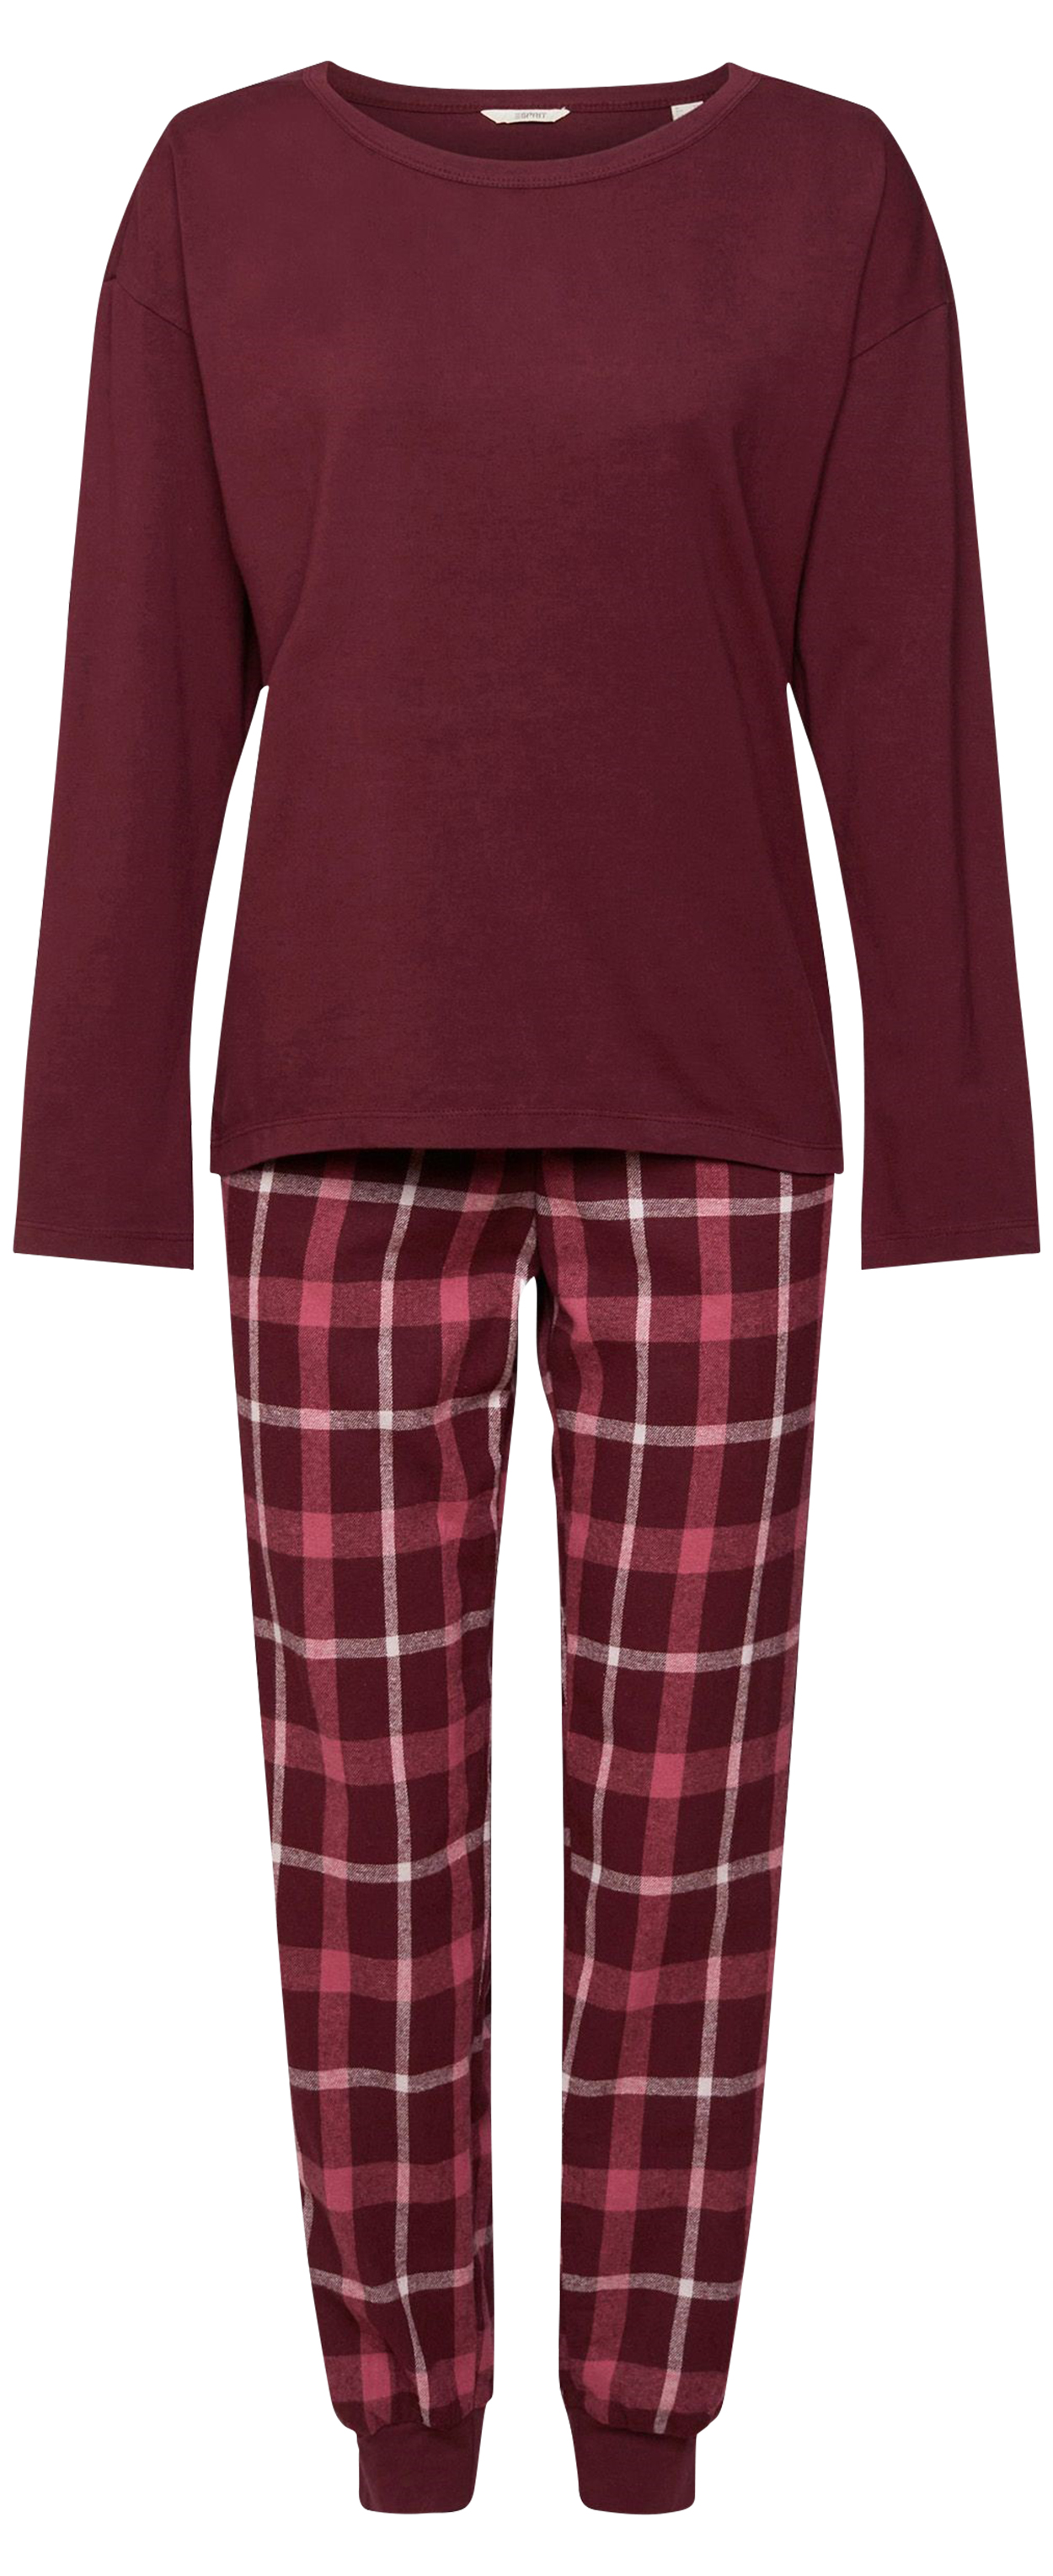 pyjama long esprit en coton avec manches longues et col rond bordeaux carreaux